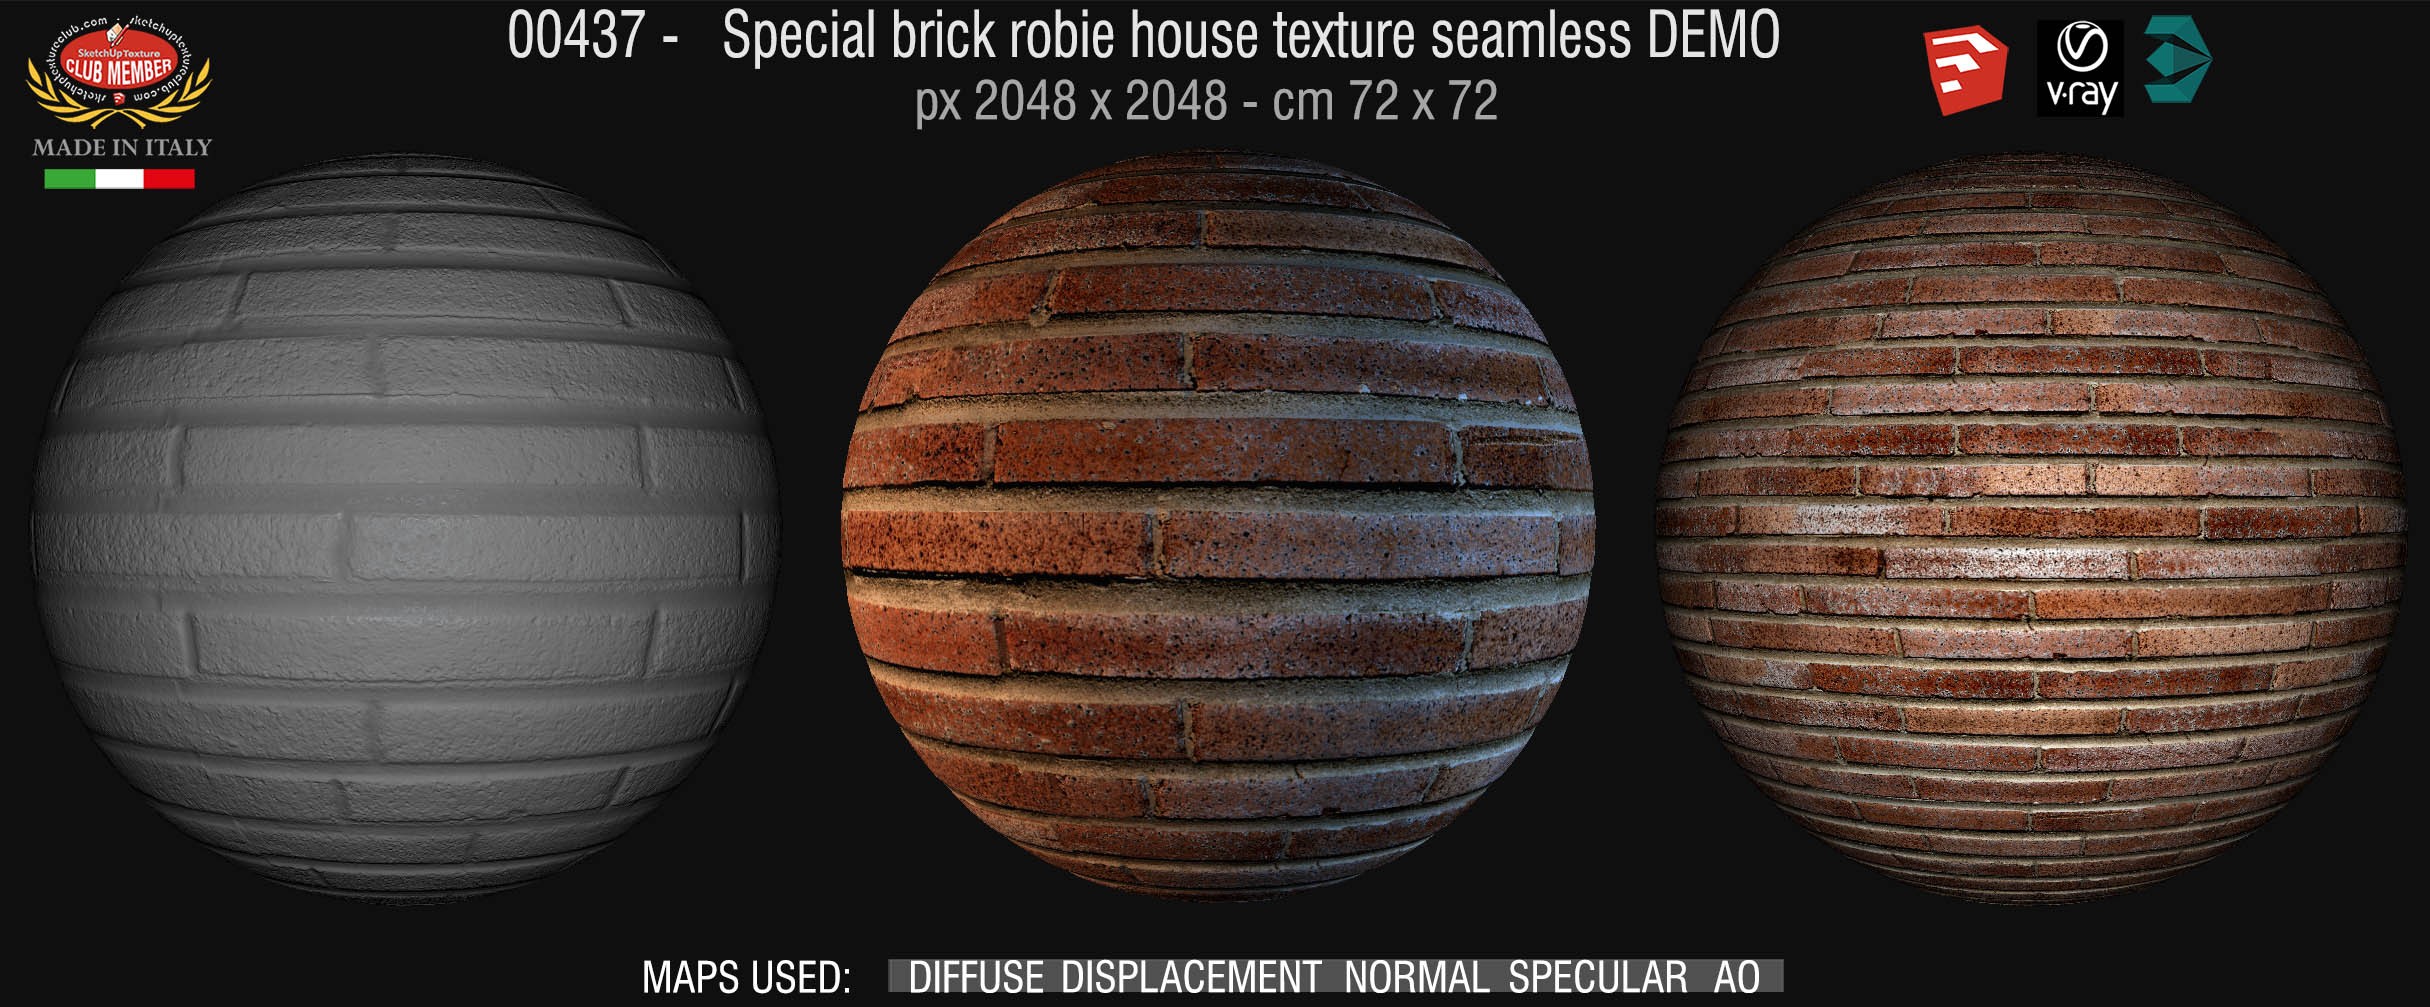 00437 special brick robie house texture seamless + maps DEMO